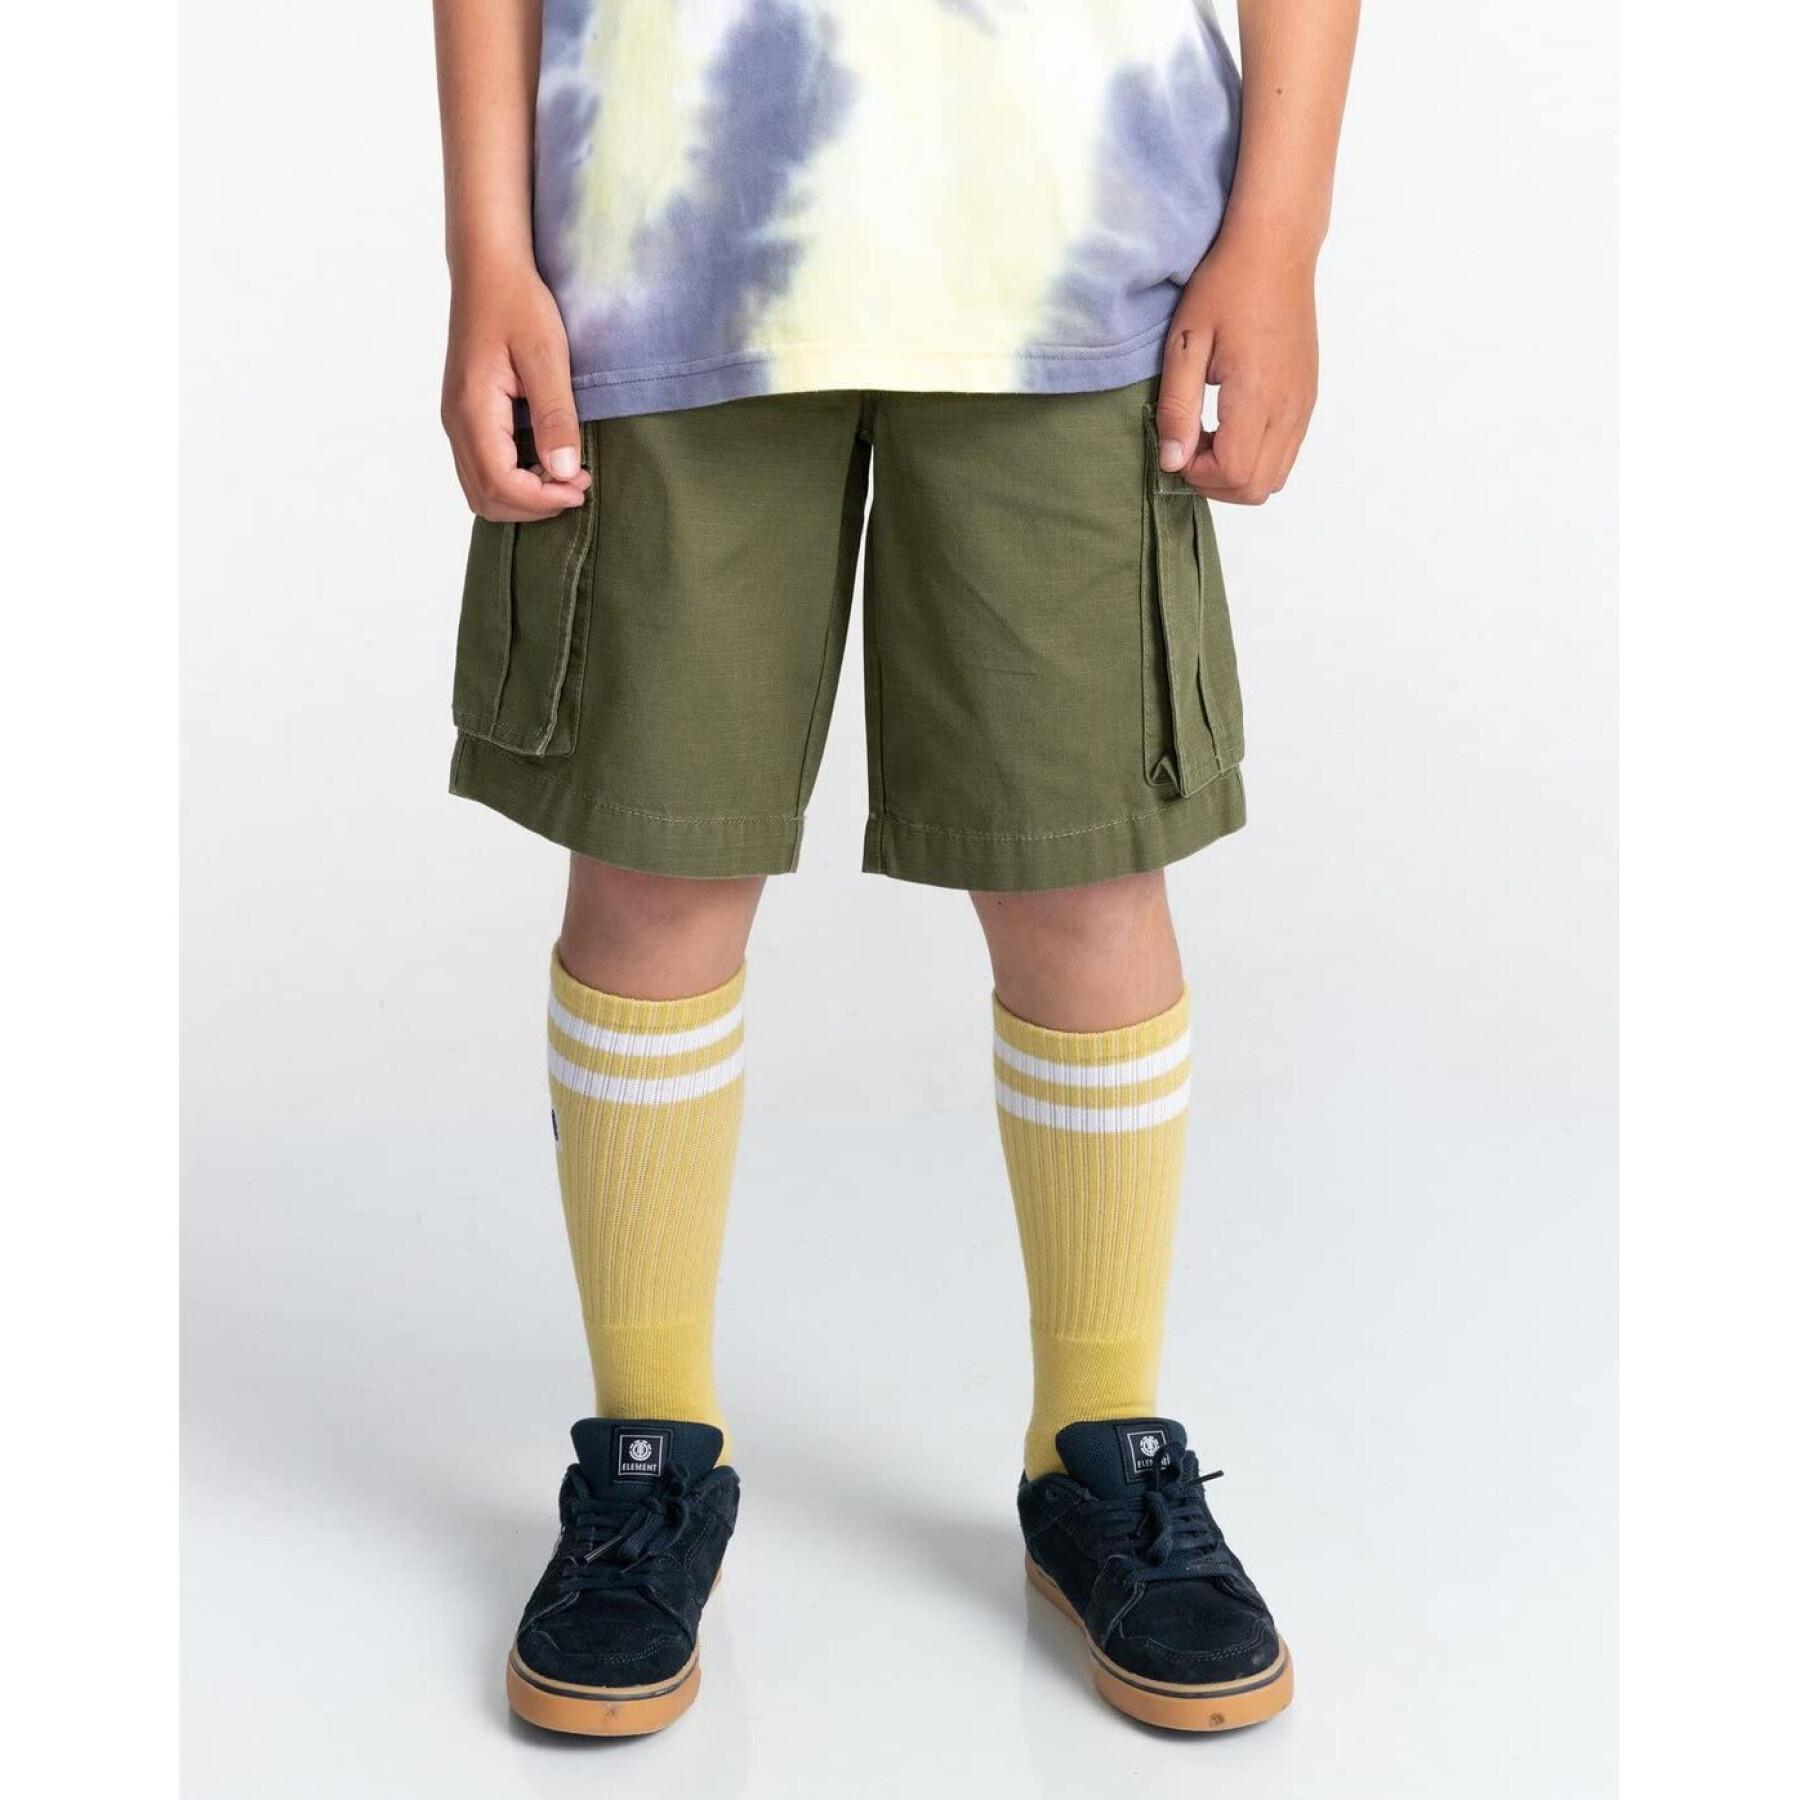 Cargo shorts voor kinderen Element Safari